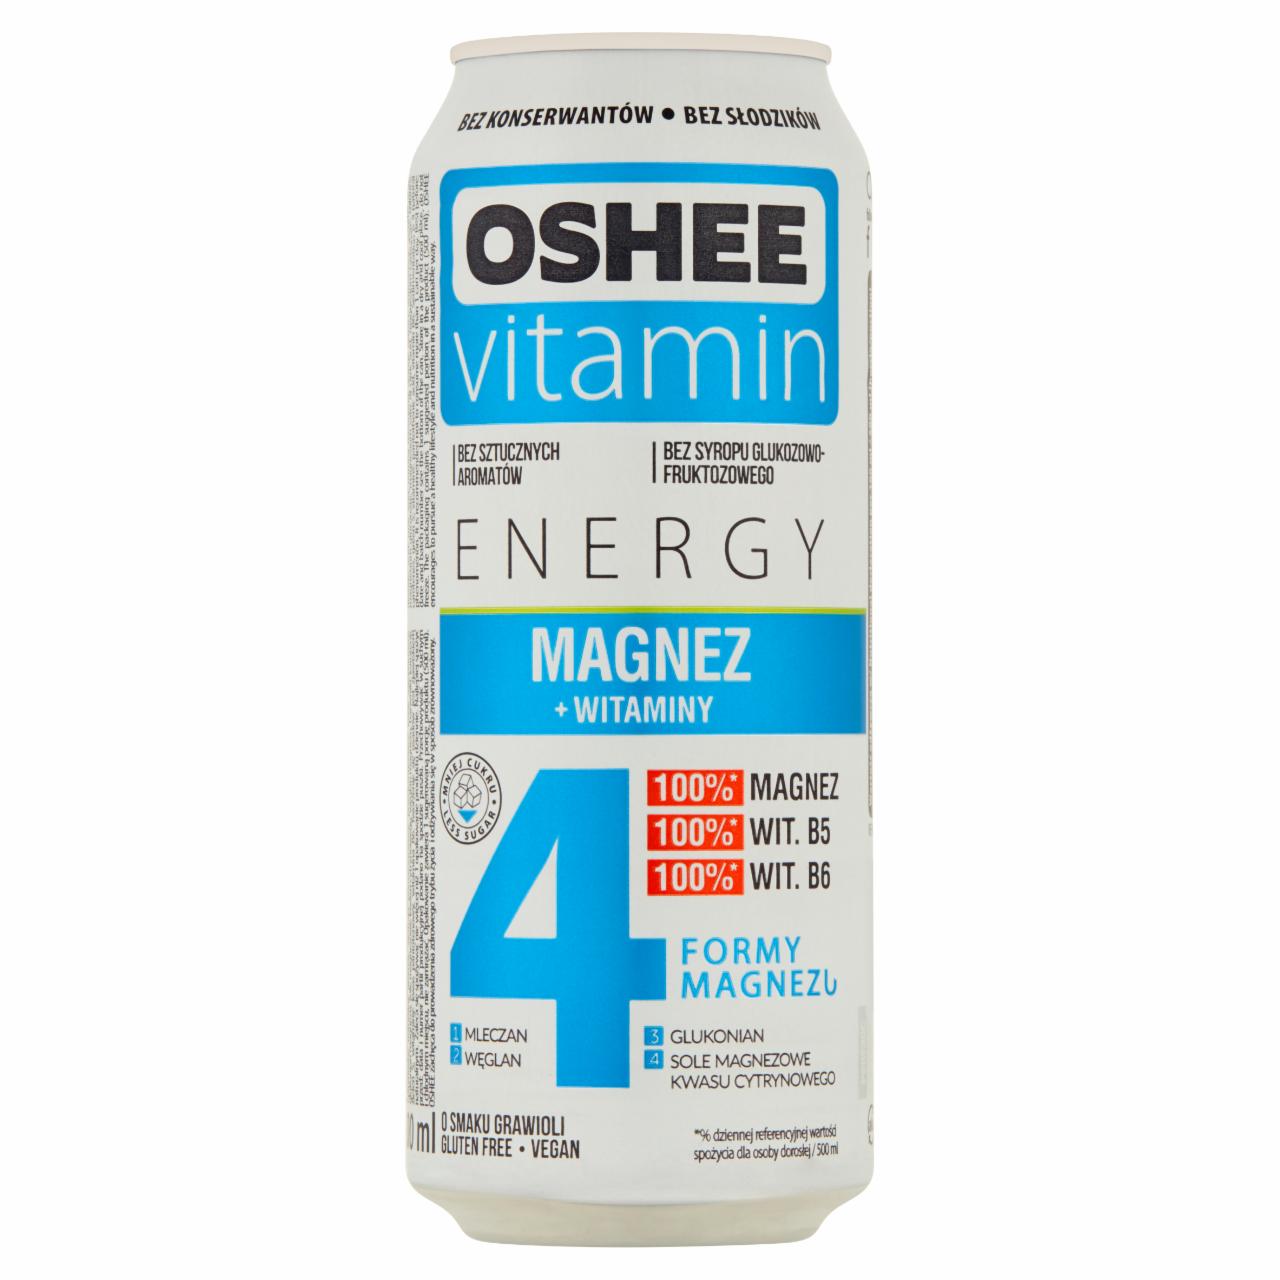 Zdjęcia - Oshee Vitamin Energy Napój gazowany o smaku grawioli 500 ml